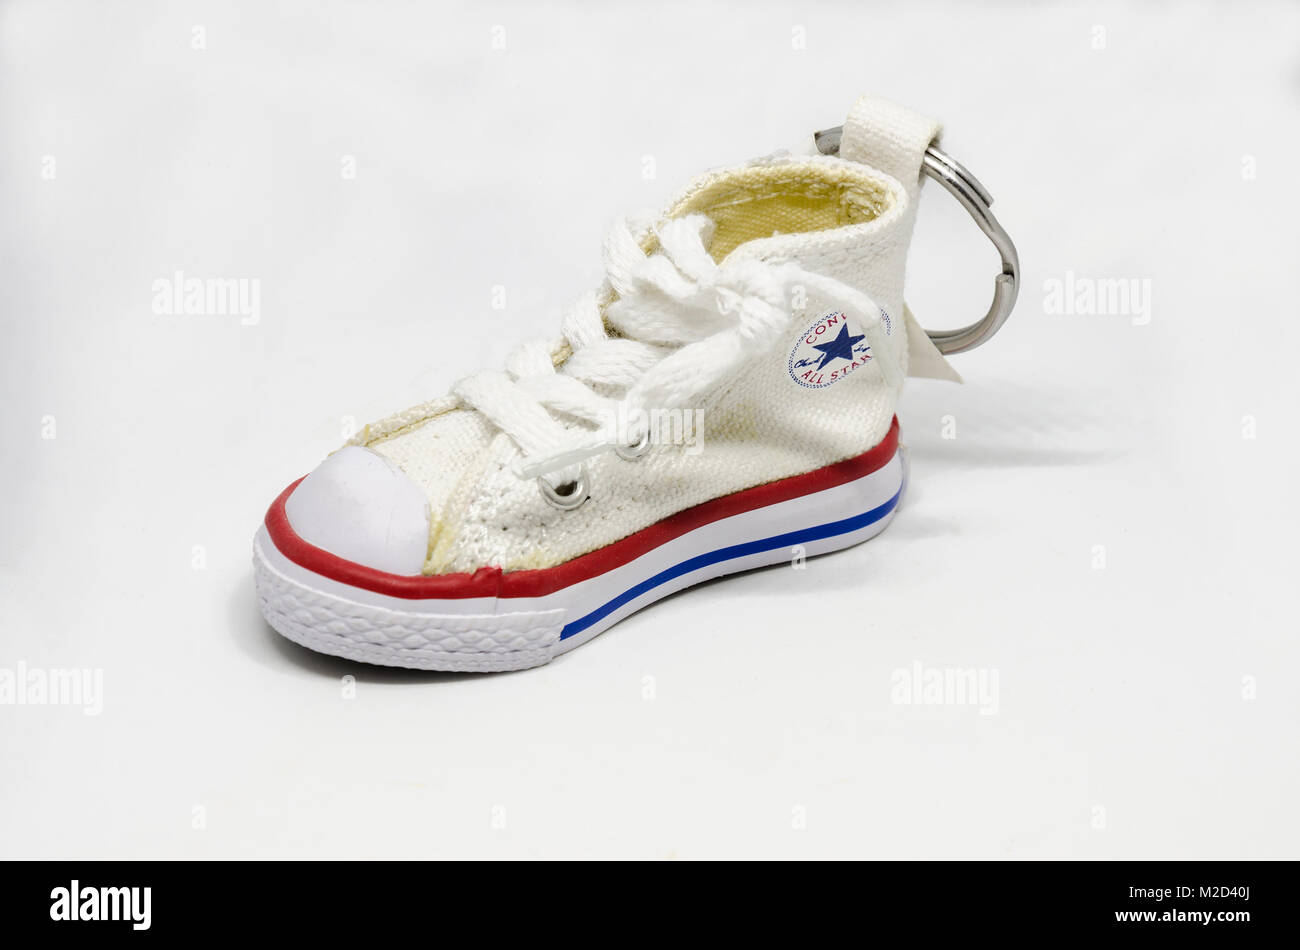 Une nouveauté porte-clés sous la forme d'une converse all stars trainer  shoe Photo Stock - Alamy